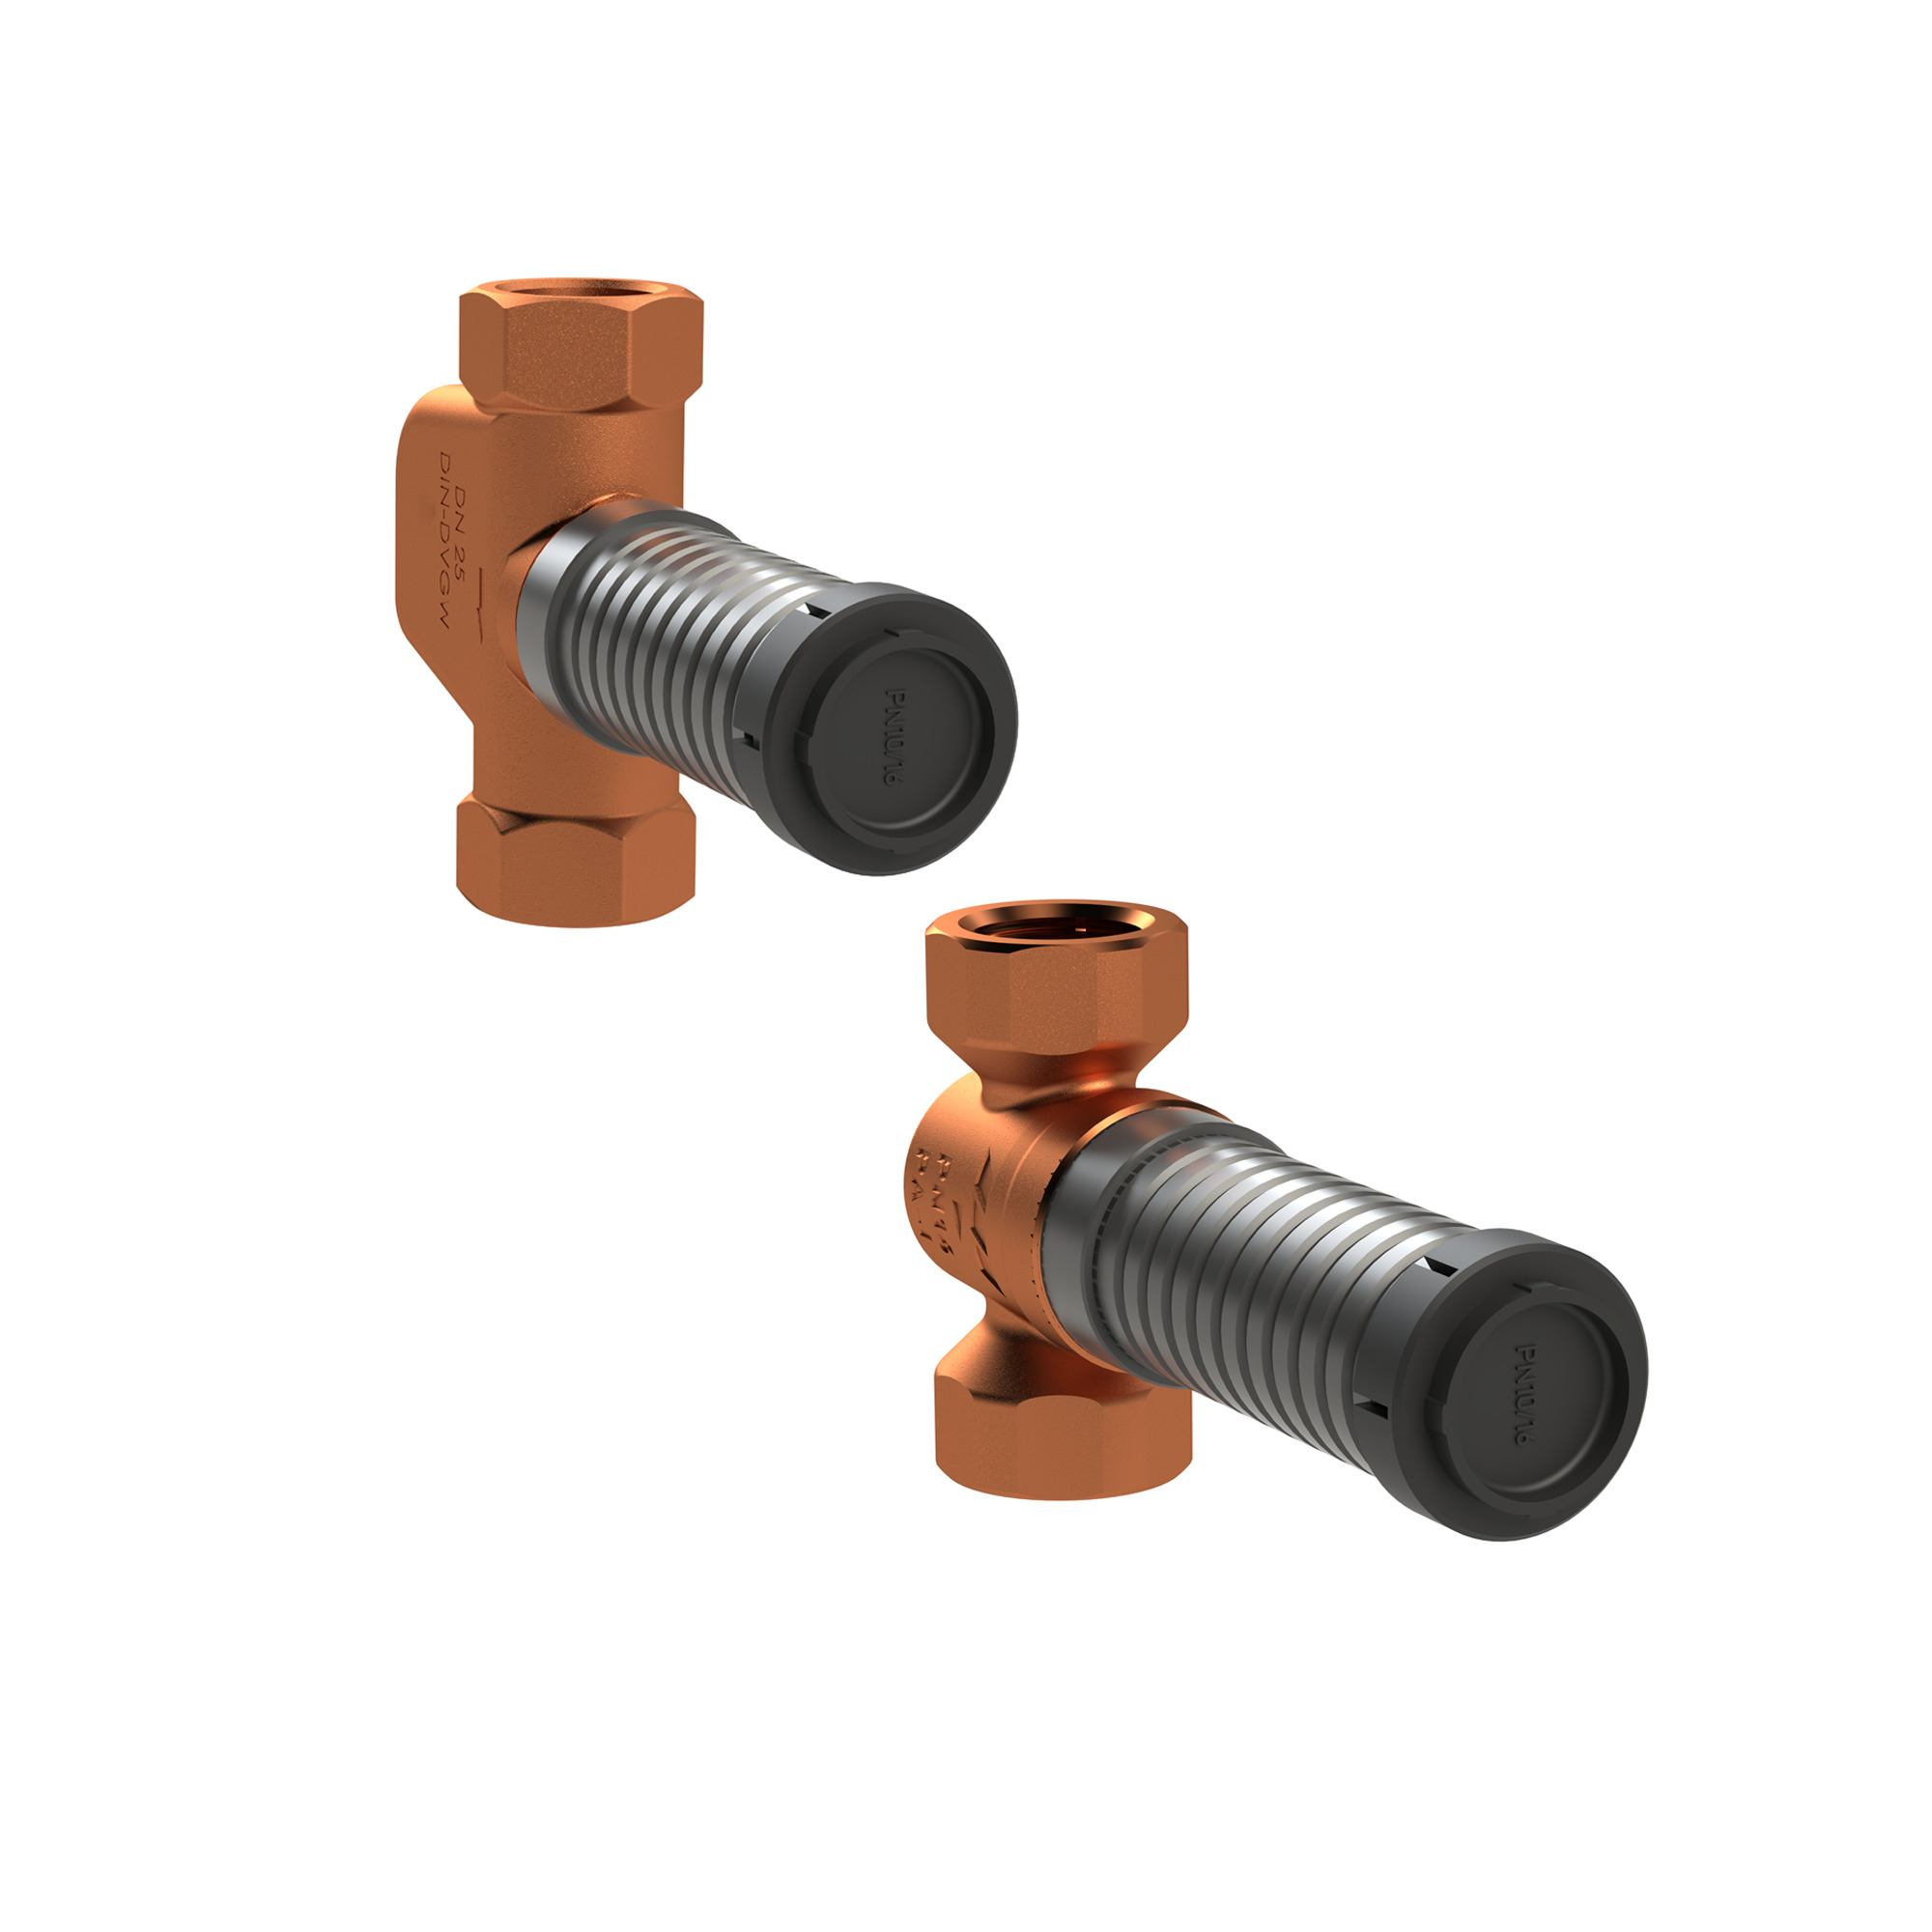 Flush-mounted valves